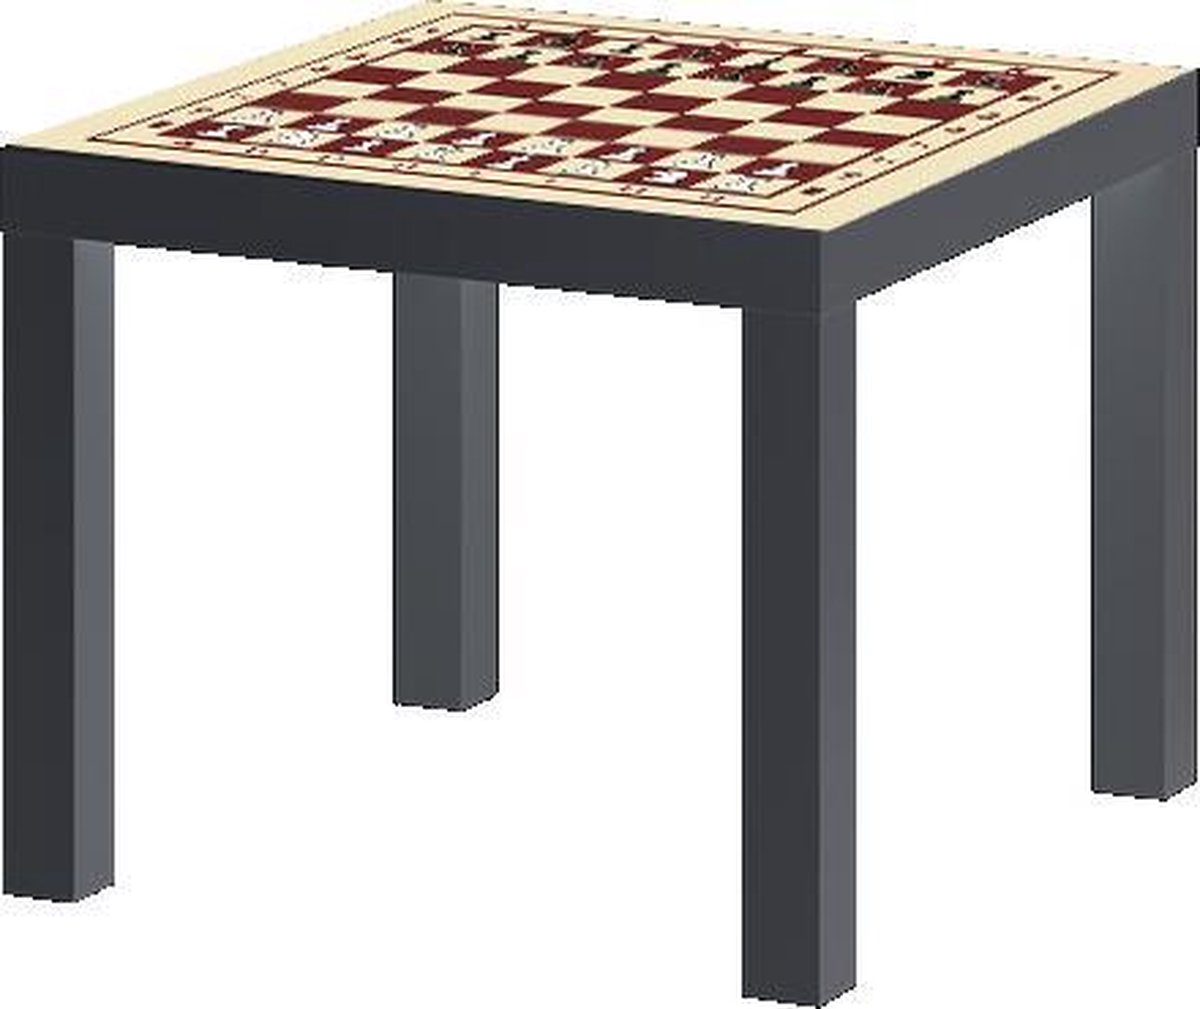 IKEA® Lack™ met schaakbord print zwart - MET opdruk stukken |